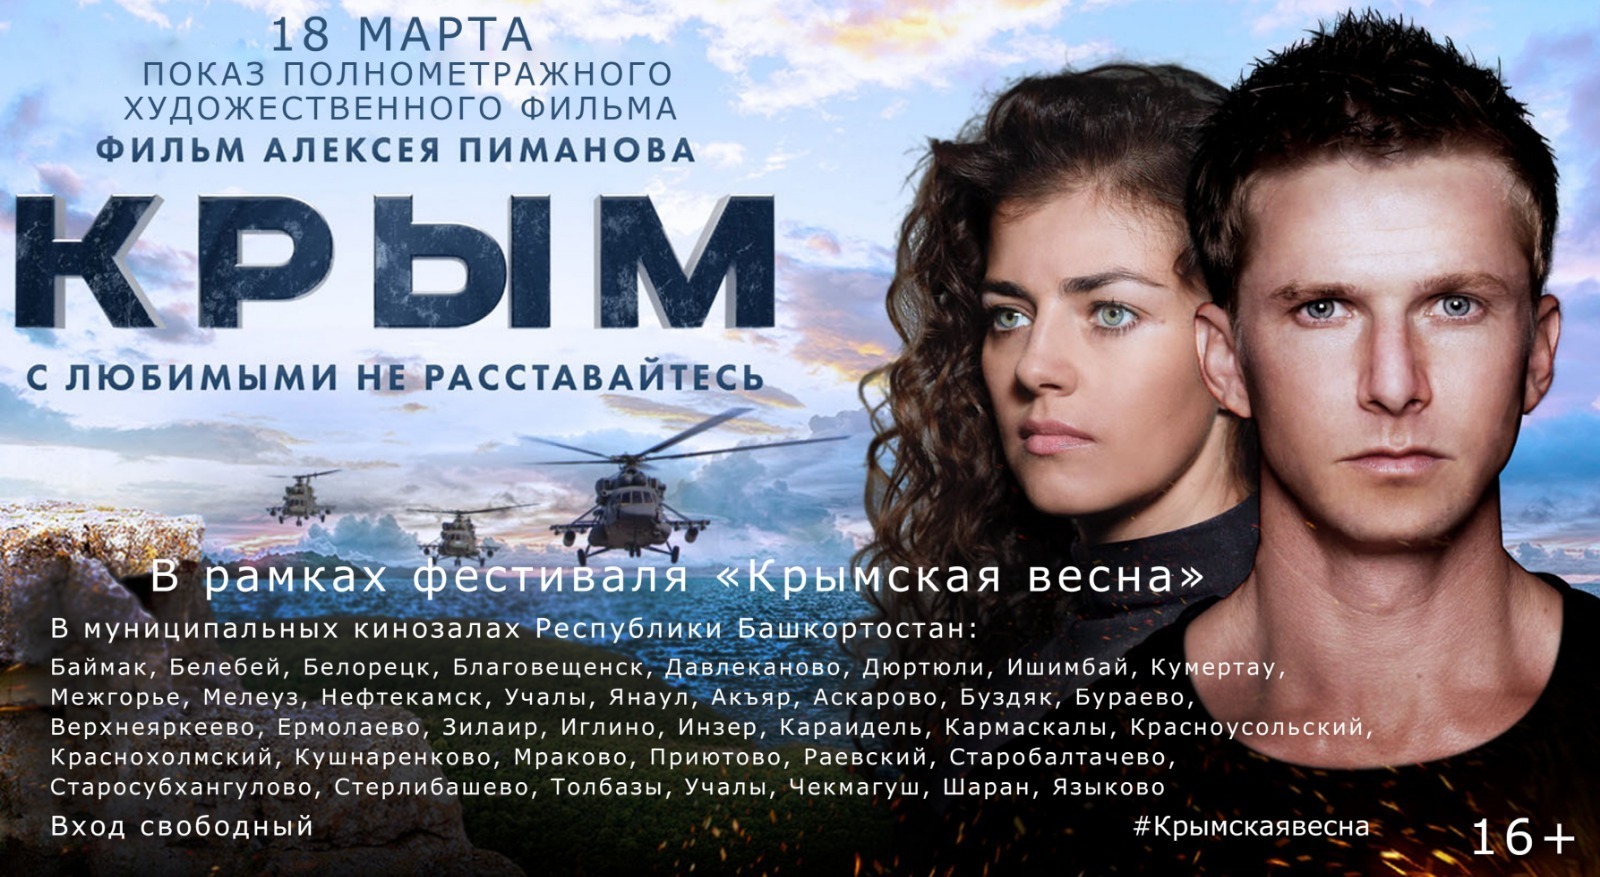 В Башкирии пройдет фестиваль «Крымская весна»